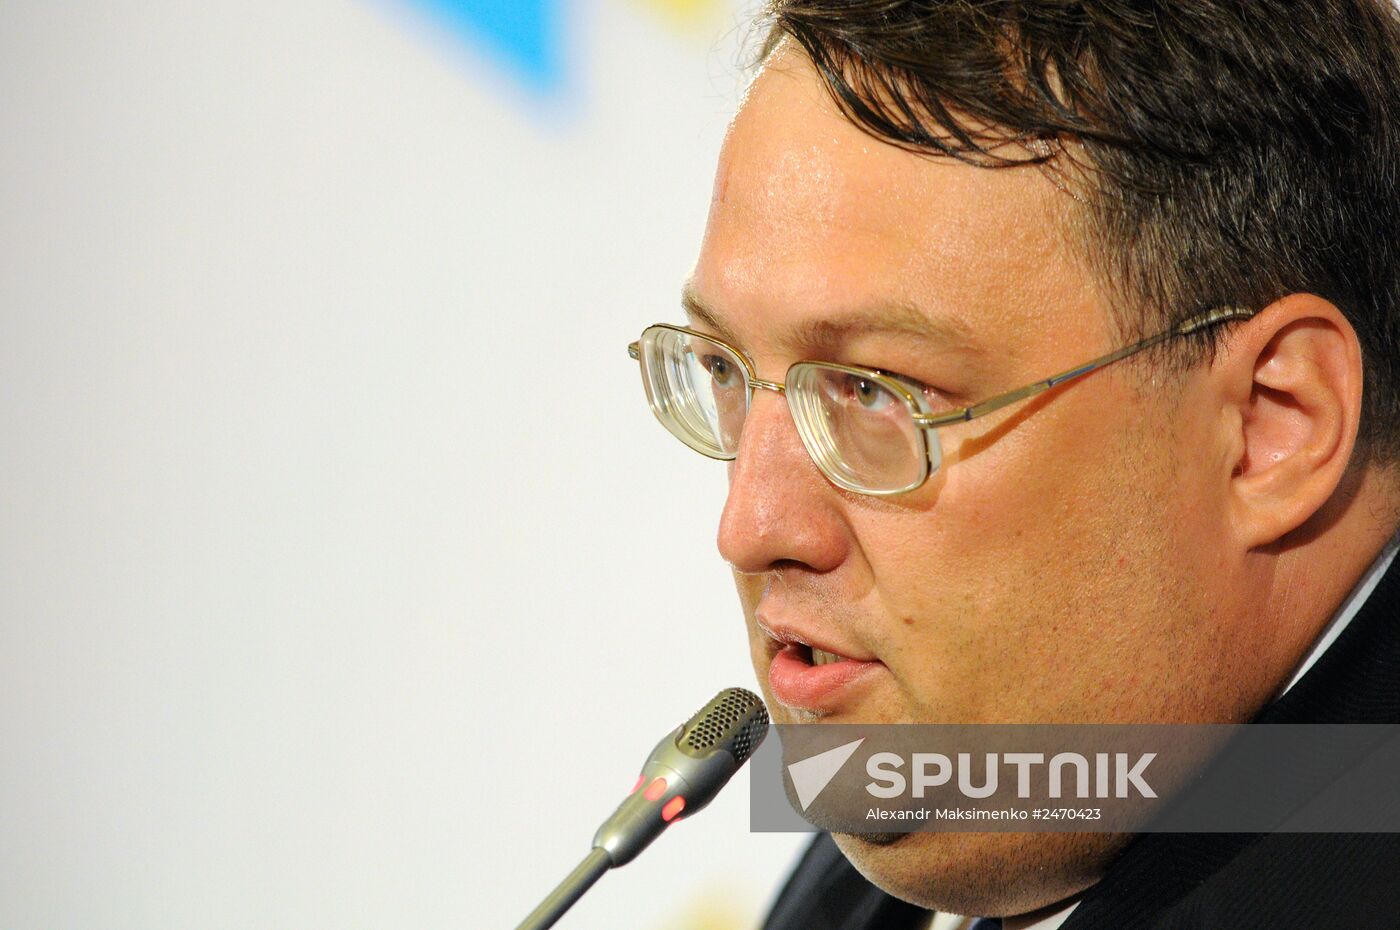 Press briefing by Anton Gerashchenko, adviser to Ukraine's Interior Minister